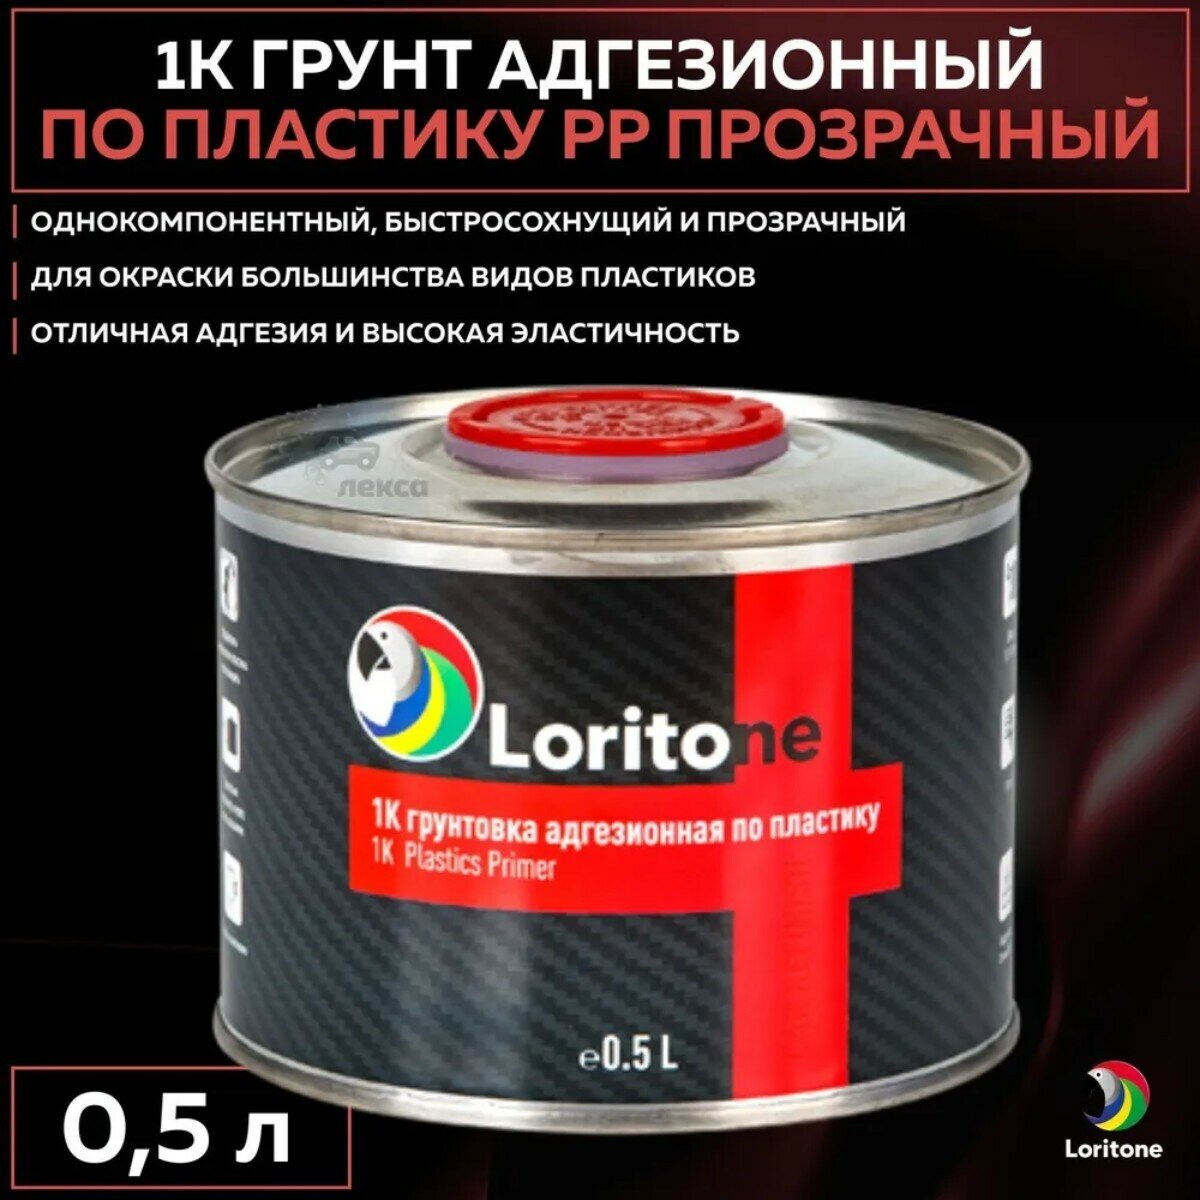 Loritone Грунт по пластику PP (c cеребром) 0,5л